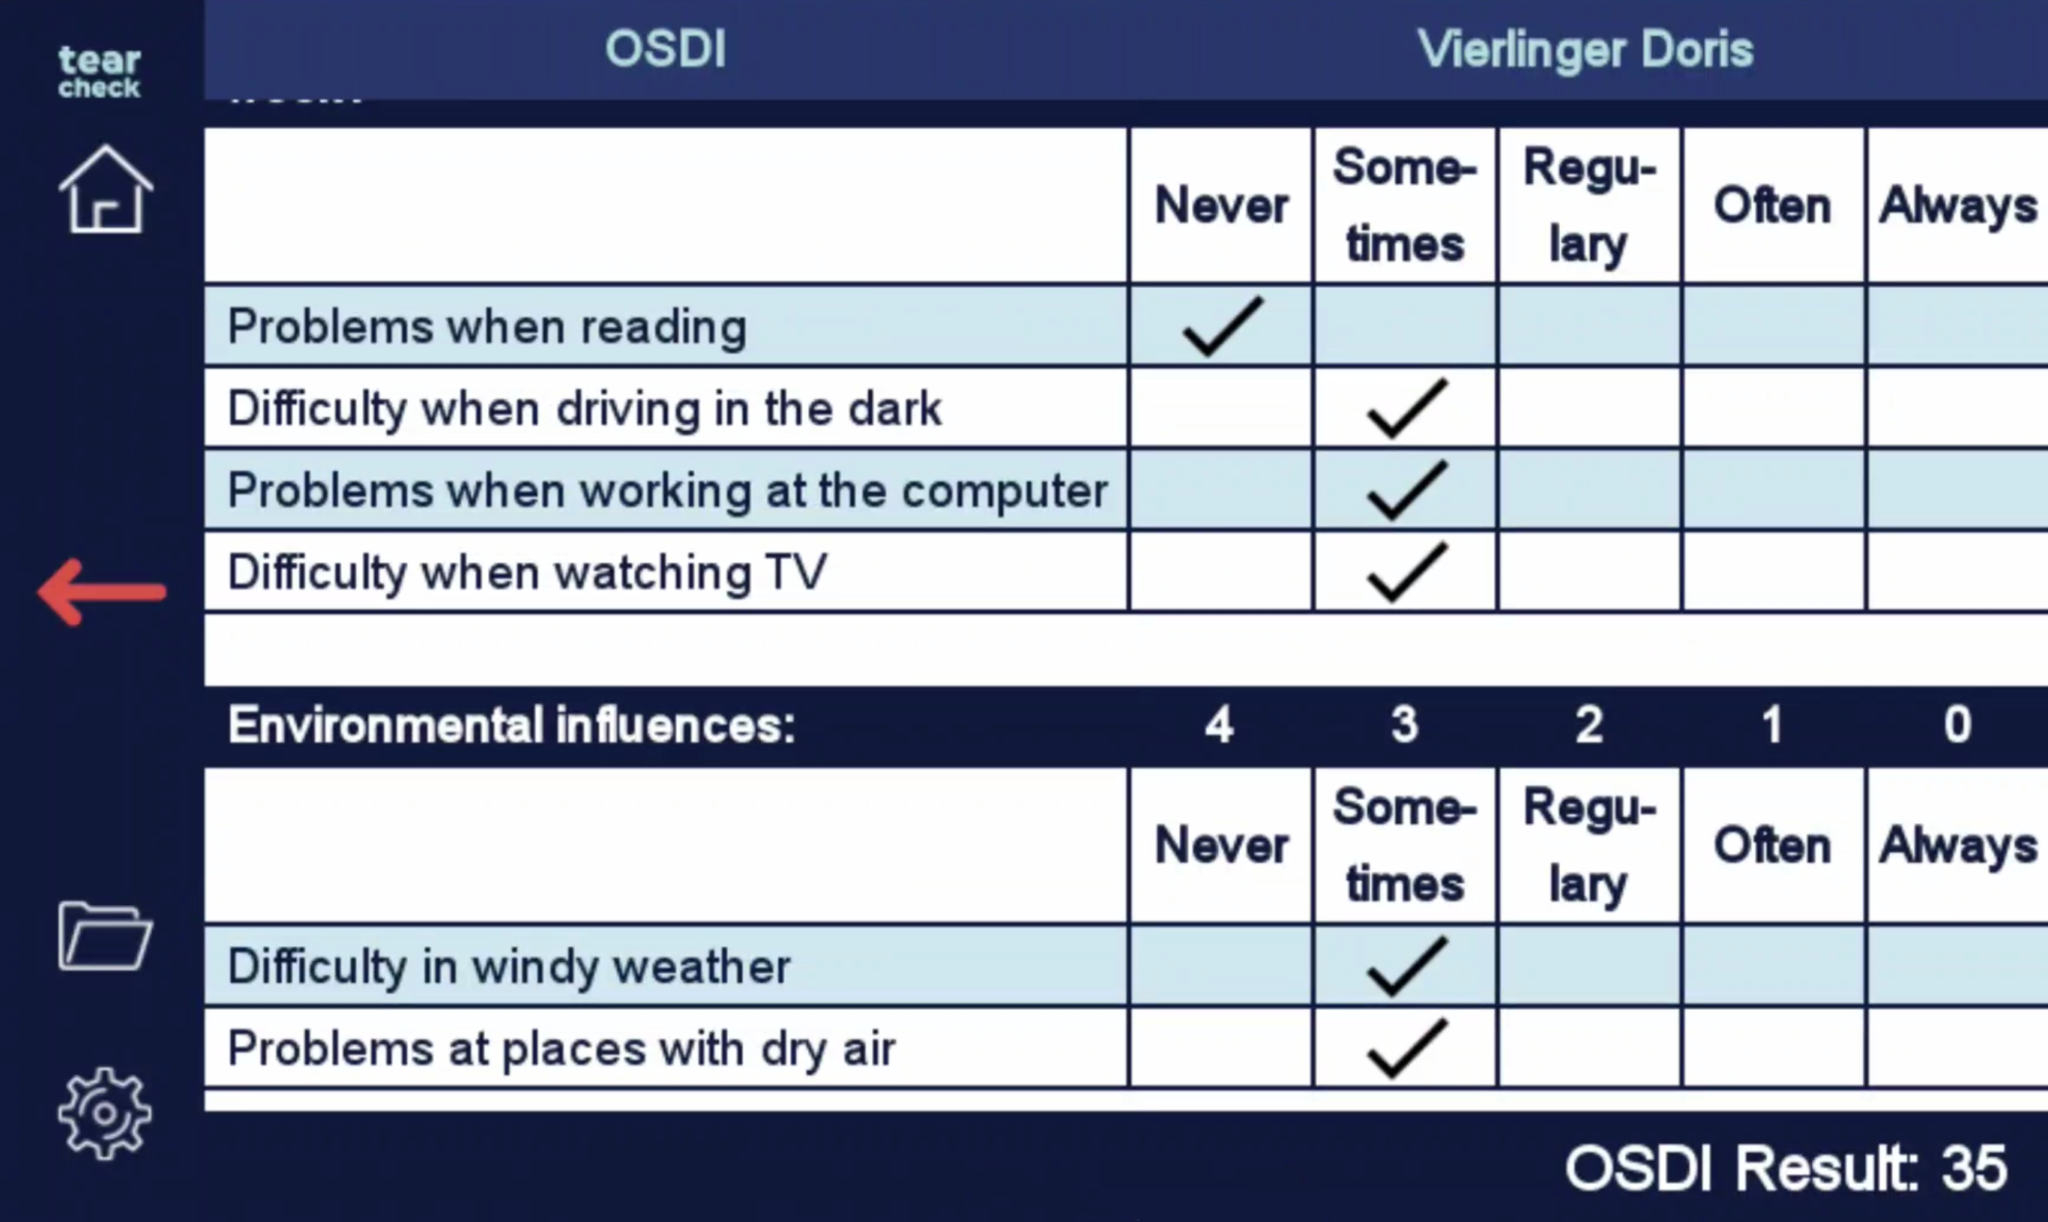 OSDI questionnaire - tearcheck